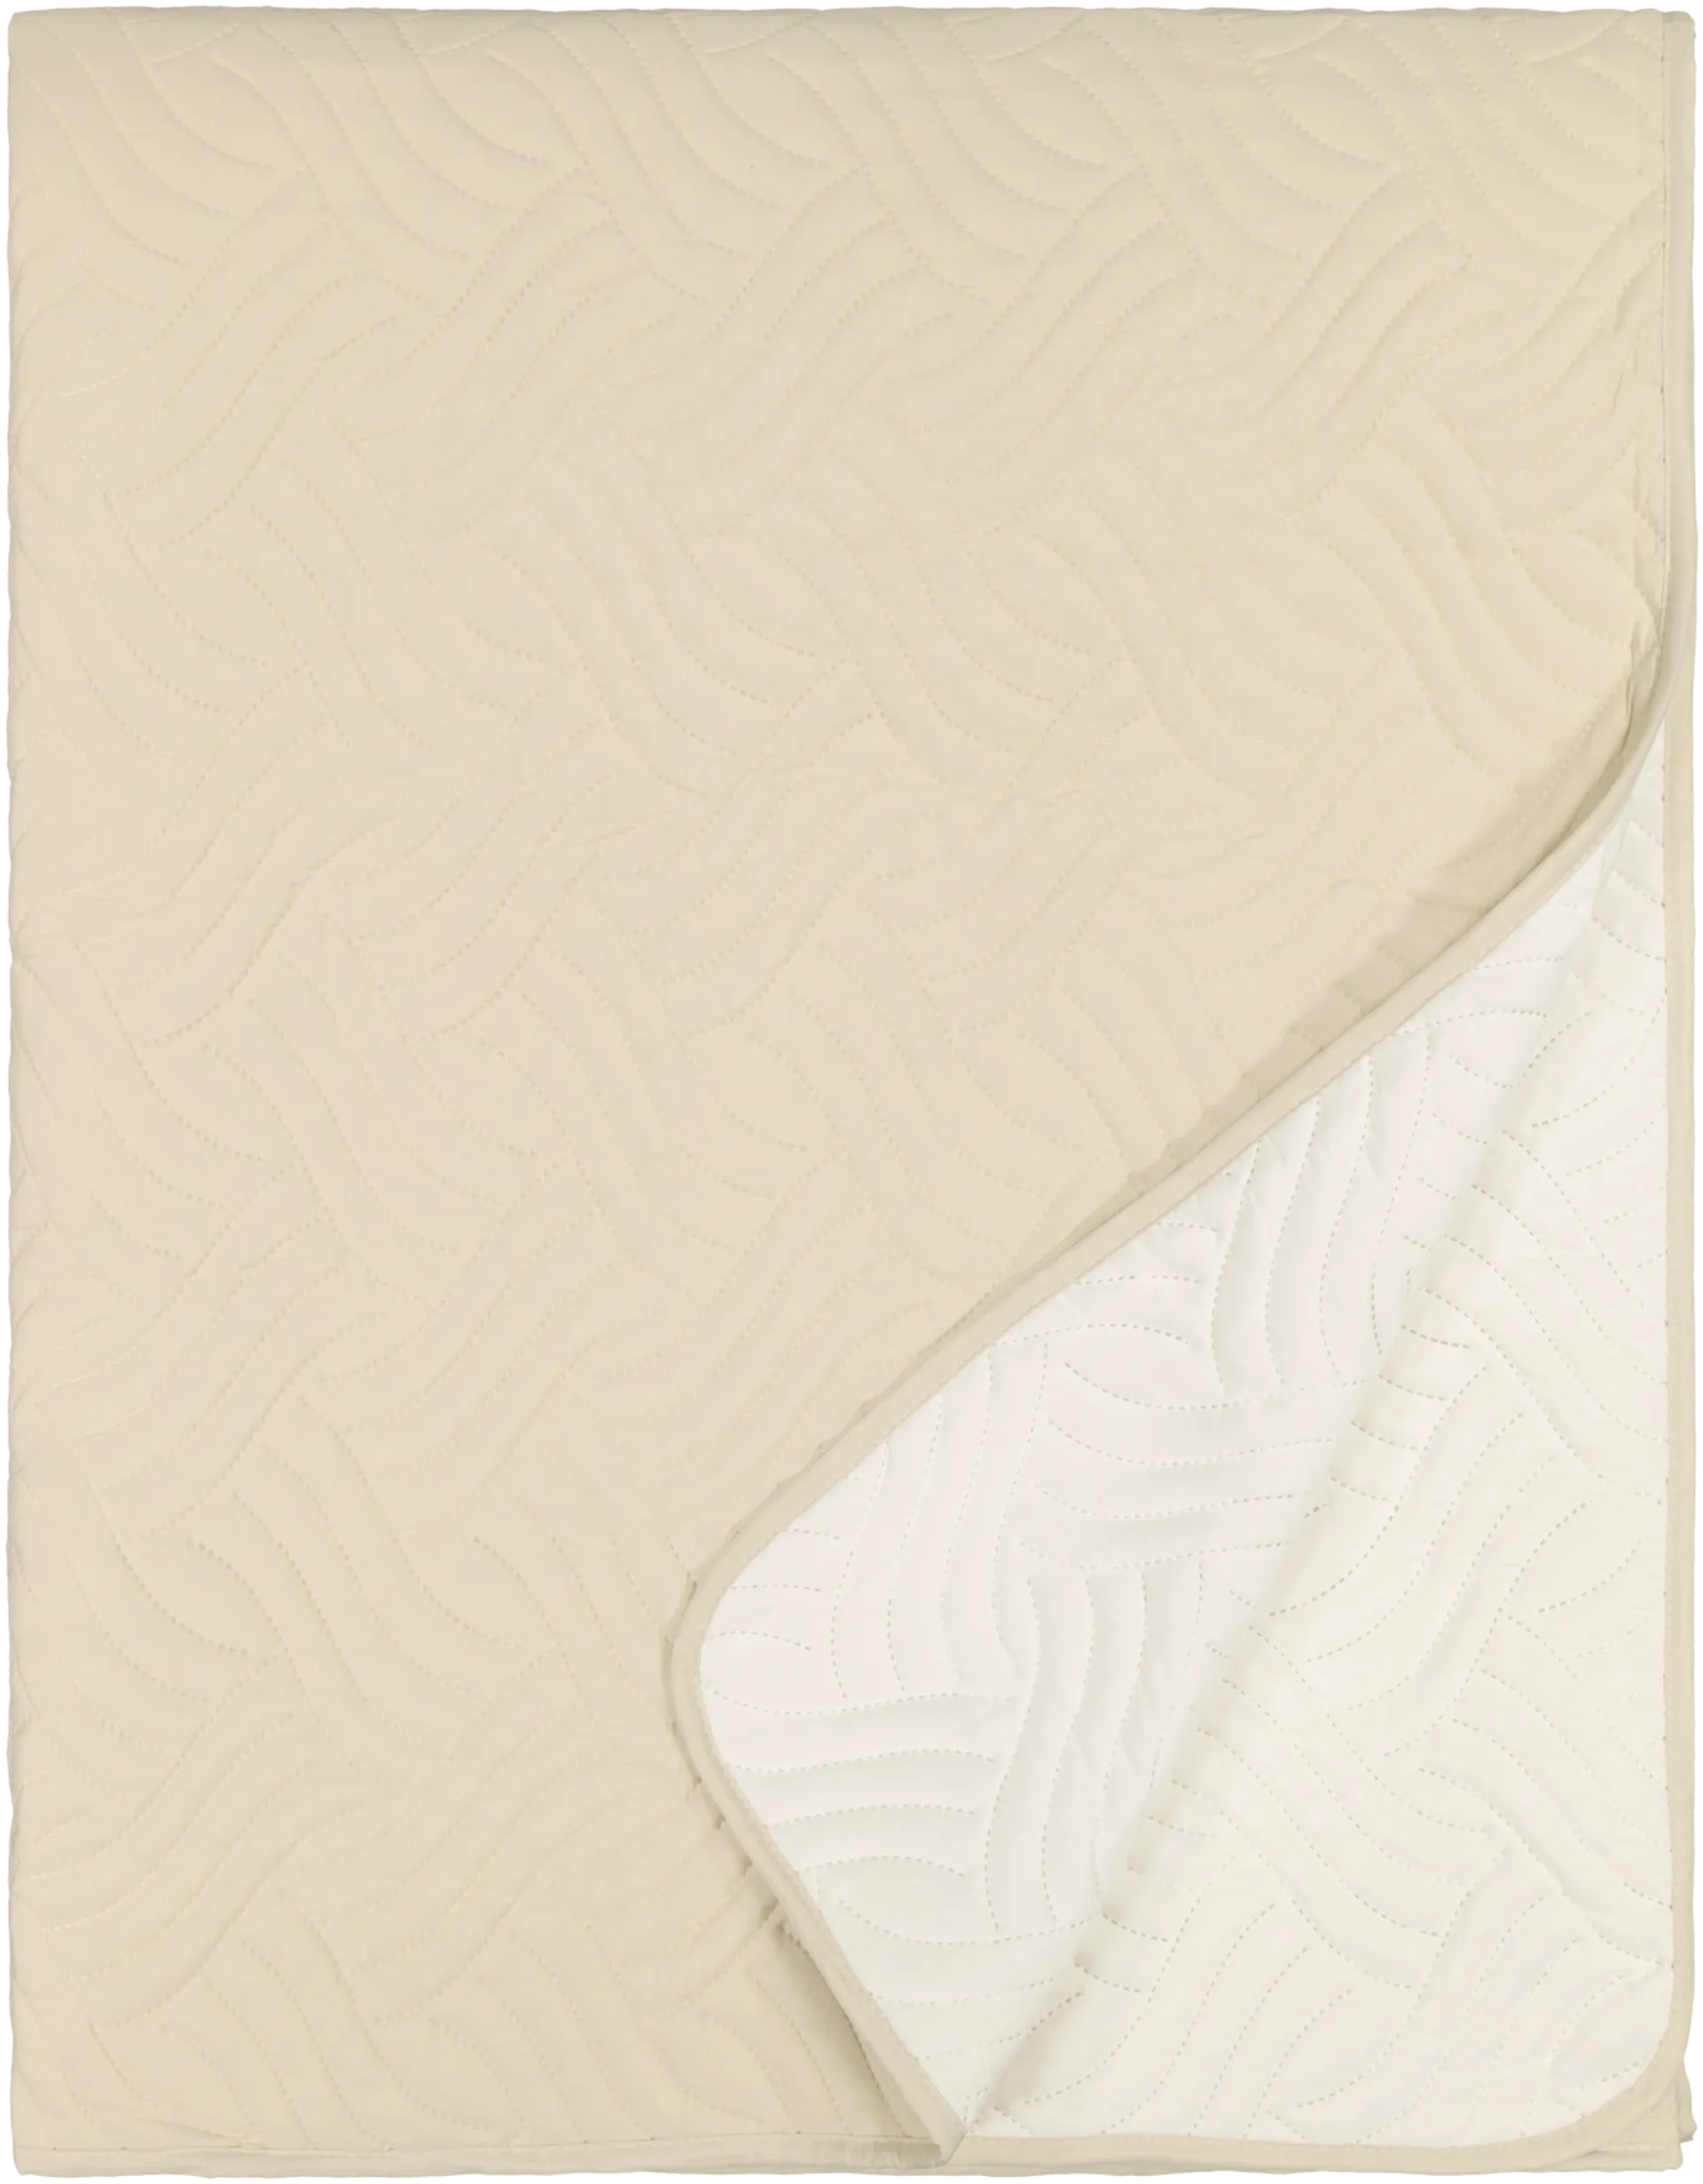 House päiväpeitto Sonic 260x260 cm, beige/luonnonvalkoinen - 1